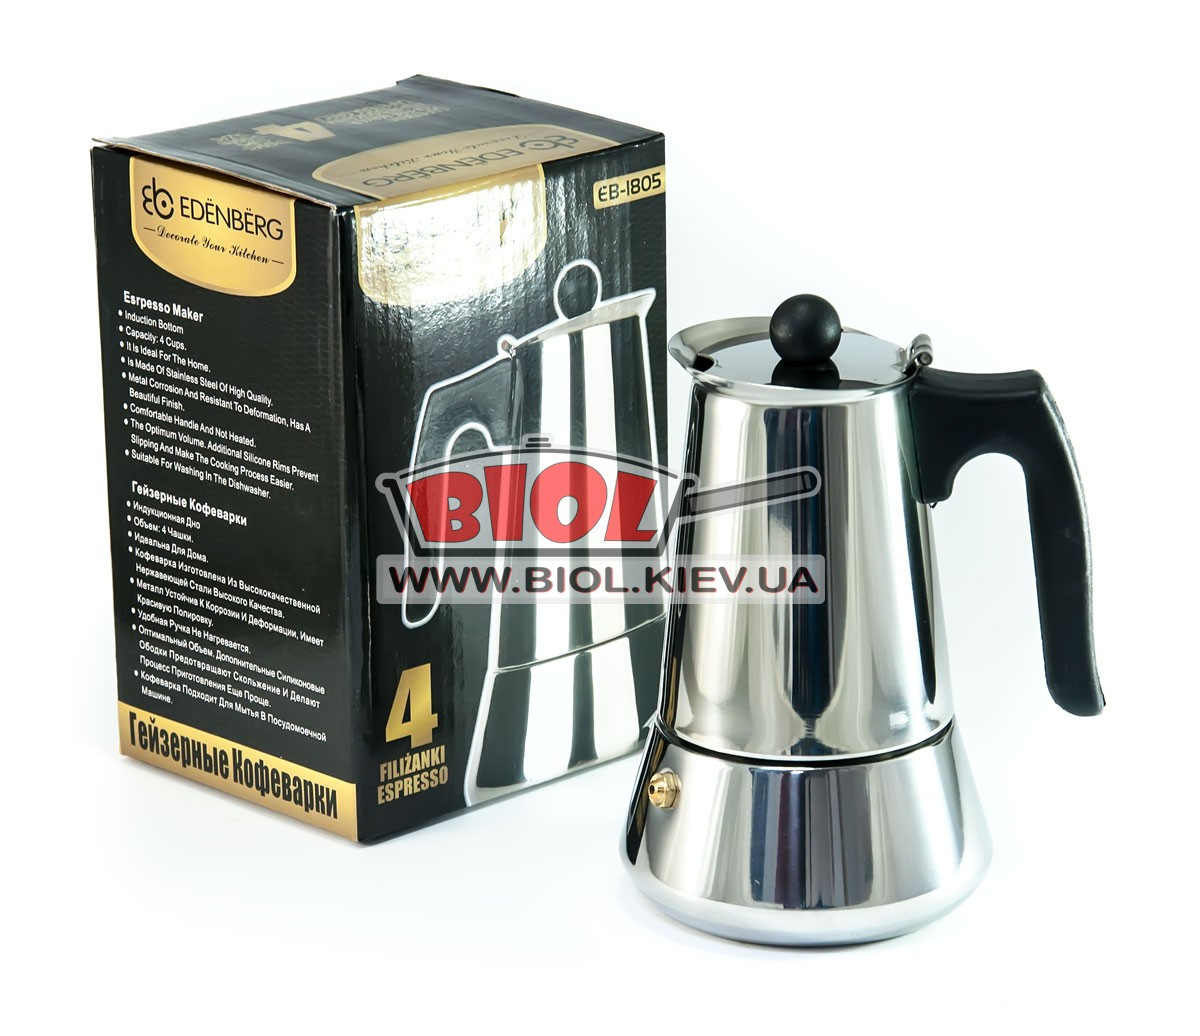 Гейзерна кавоварка 220мл (4 кавові чашки) підходить до індукційним плитах Edenberg (EB-1805)